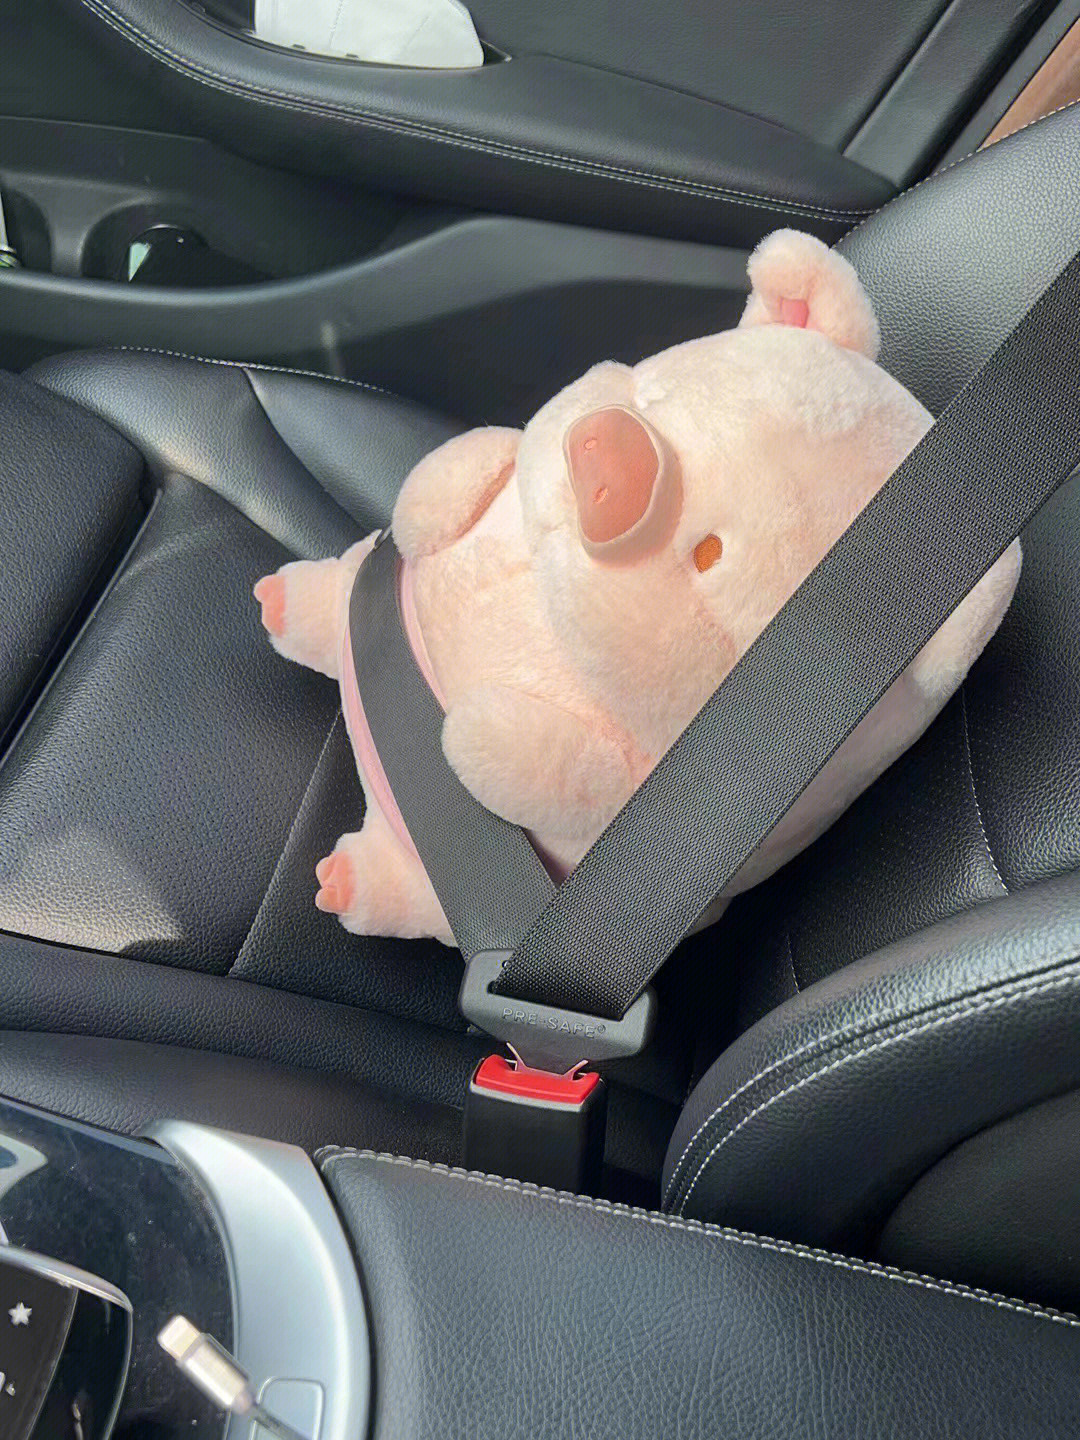 捉一只乖乖系安全带坐车的lulu猪